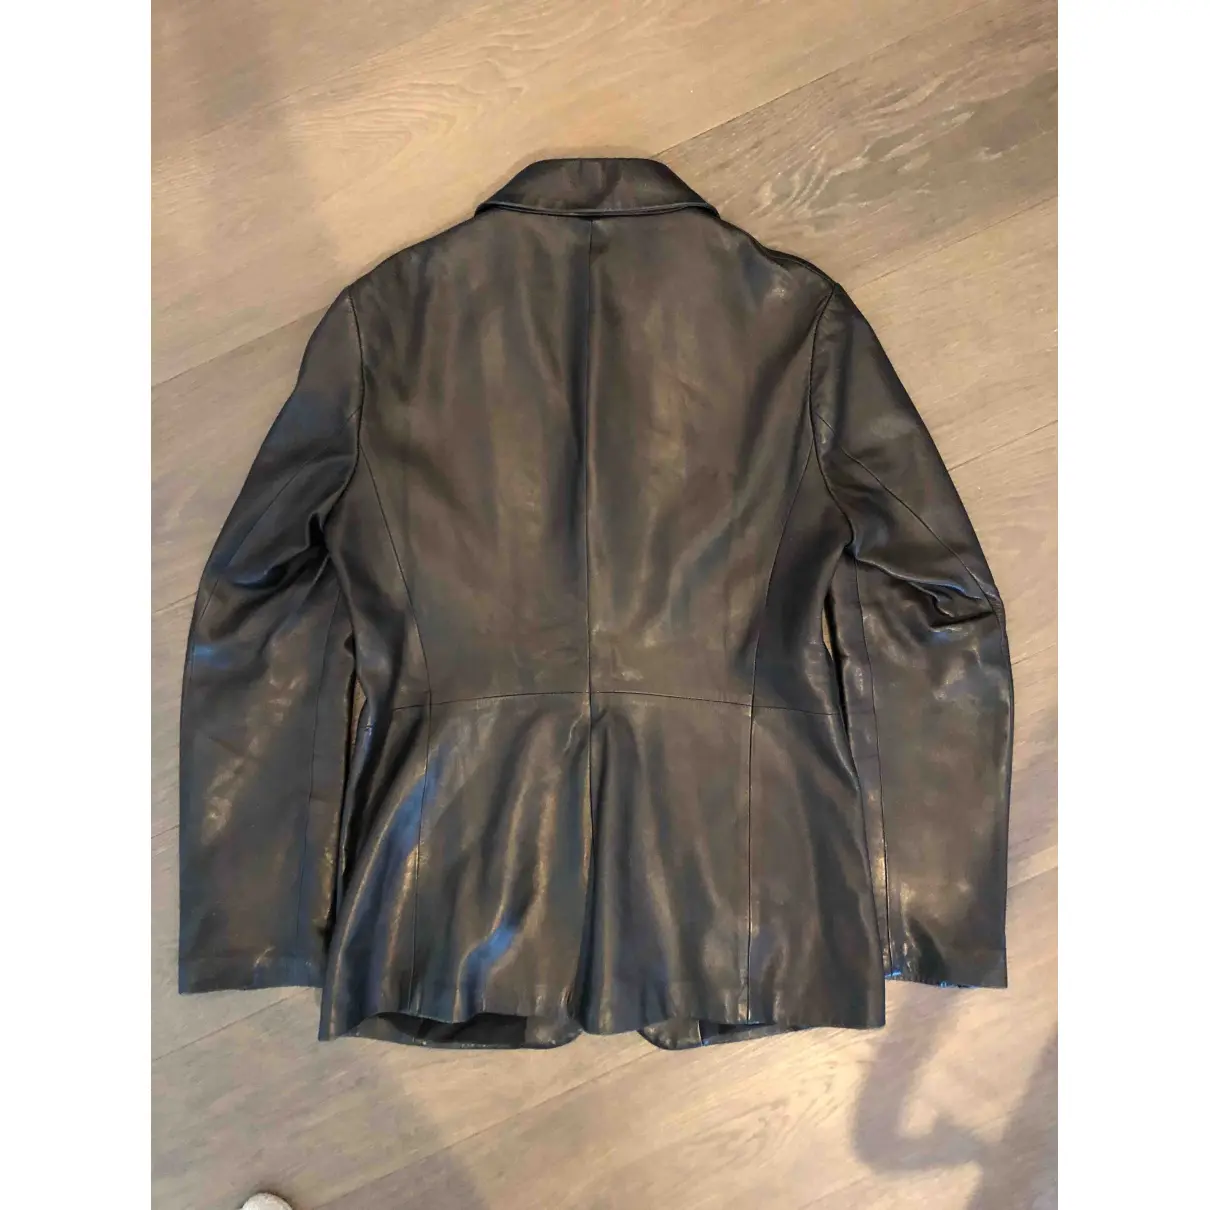 Buy Jil Sander Leather jacket online